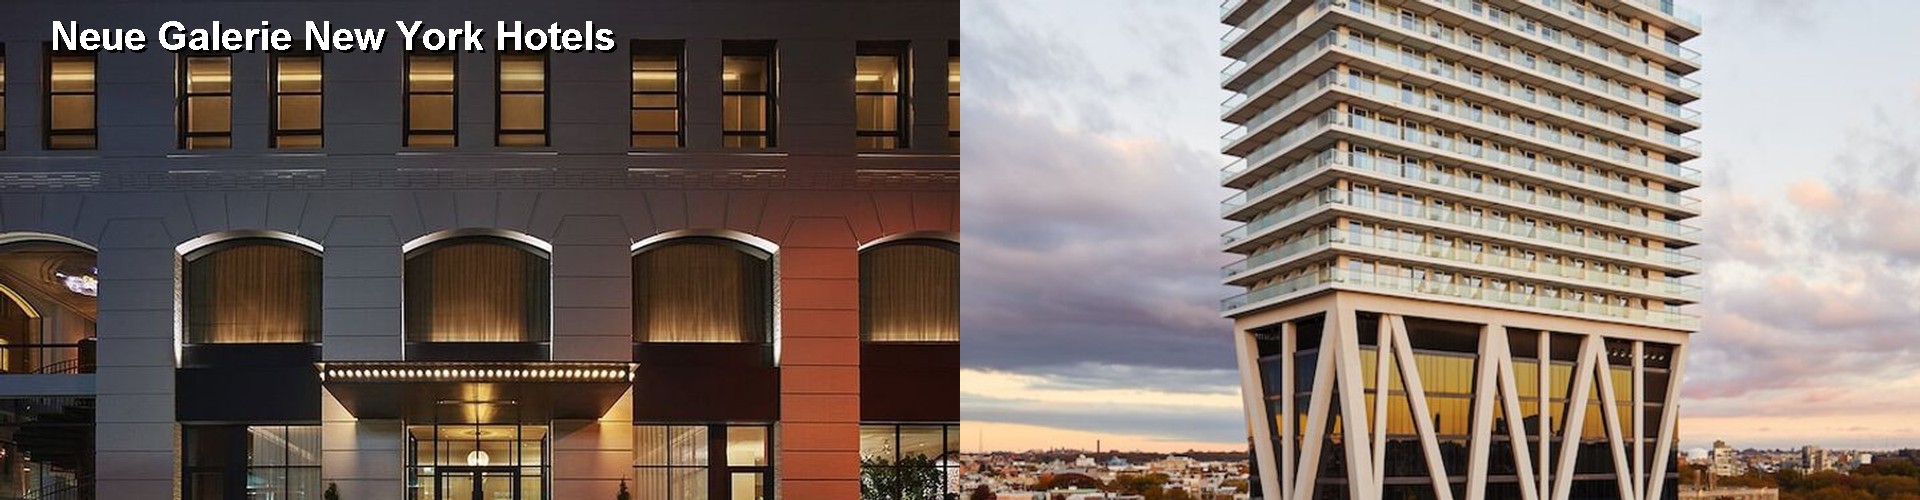 5 Best Hotels near Neue Galerie New York